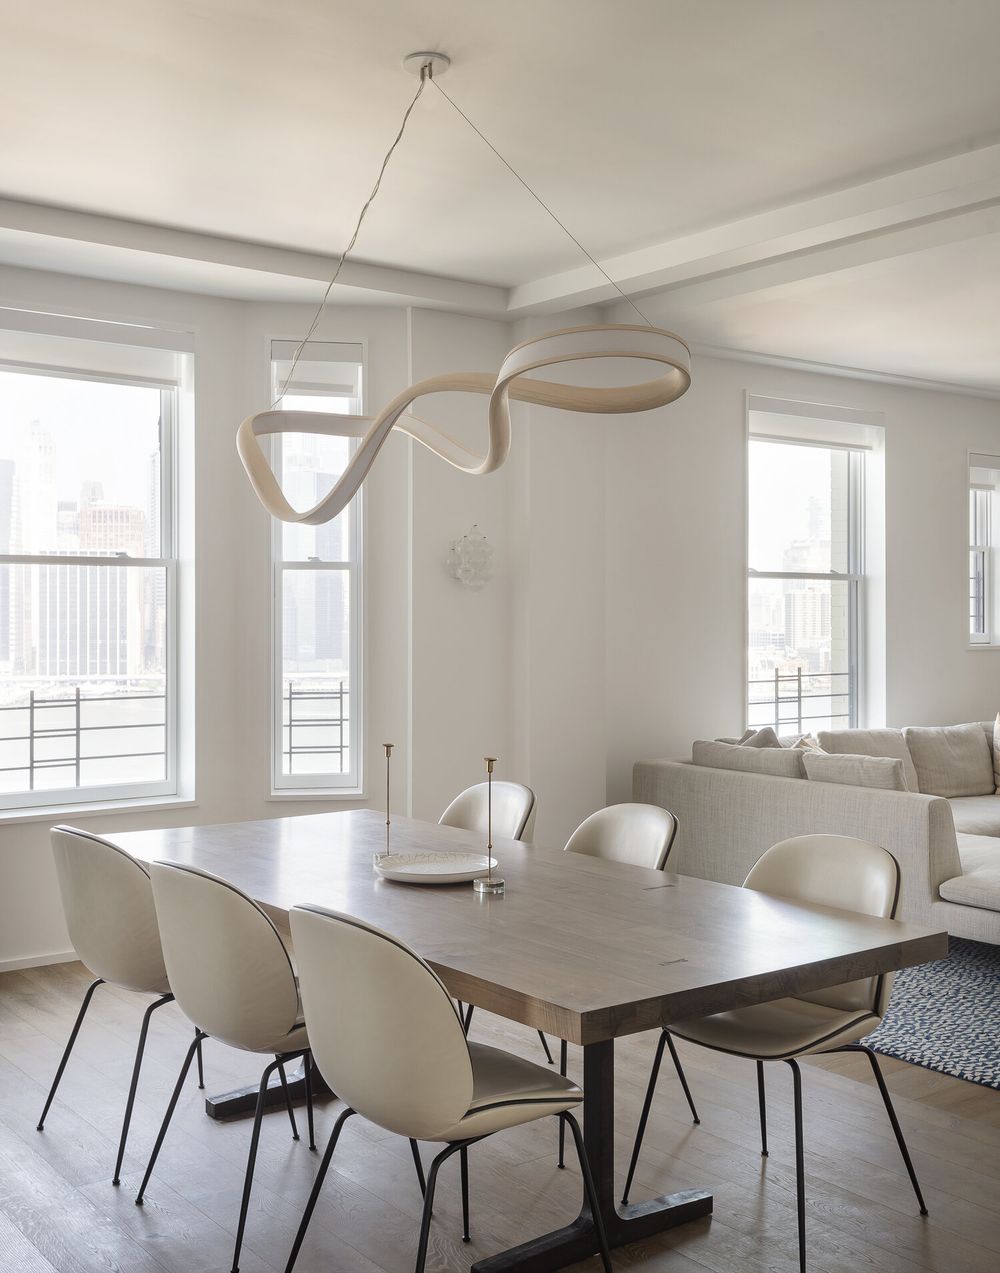 Contemporary interior design dining room ideas Open floor plan StudioDB